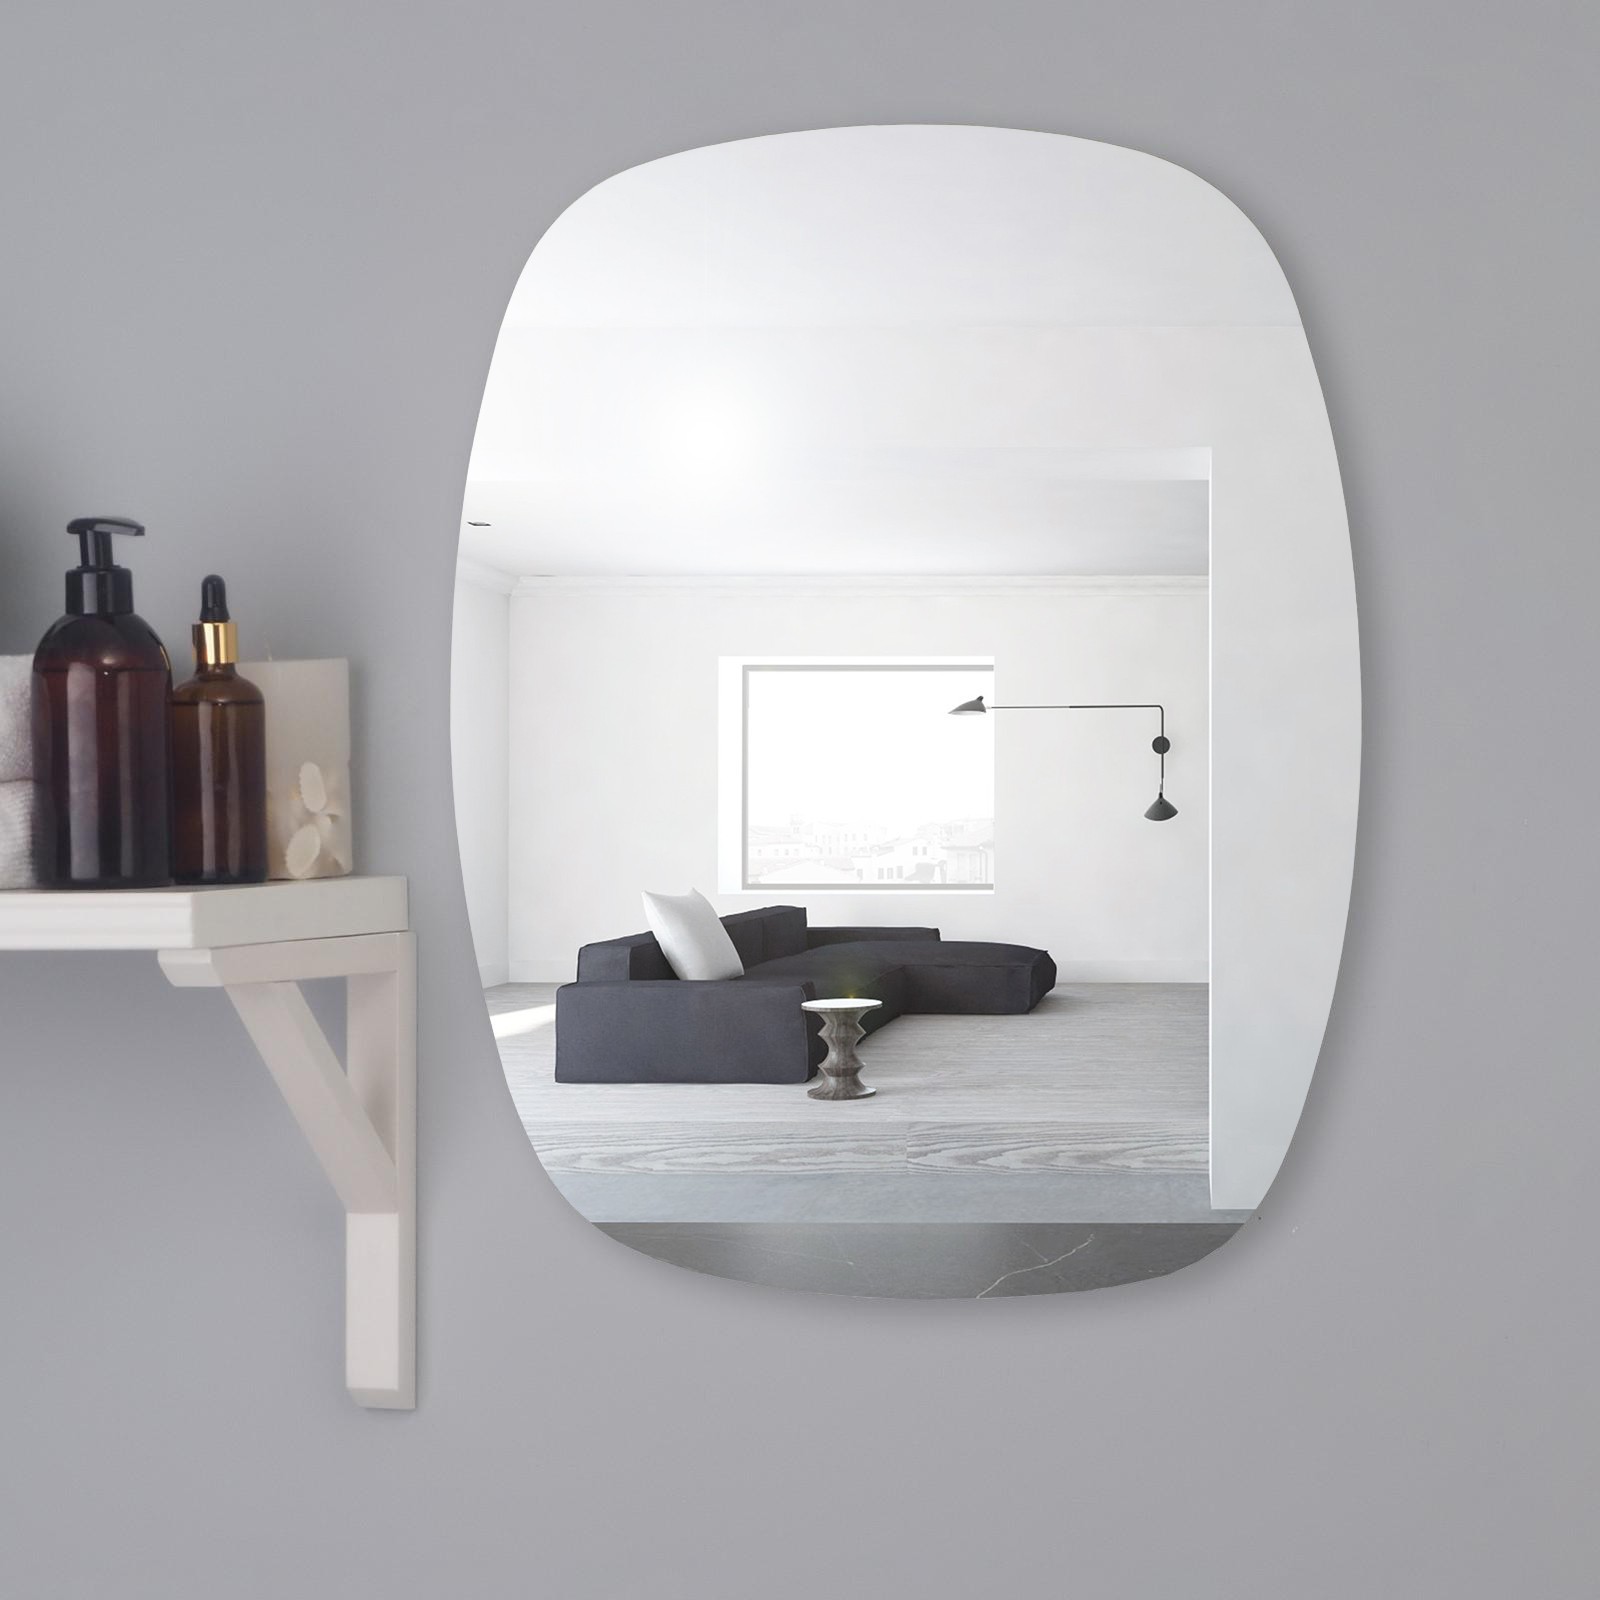 Зеркало Mirox. настенное, 4251805, 50x60 см настенное зеркало берже 90 белый ясень